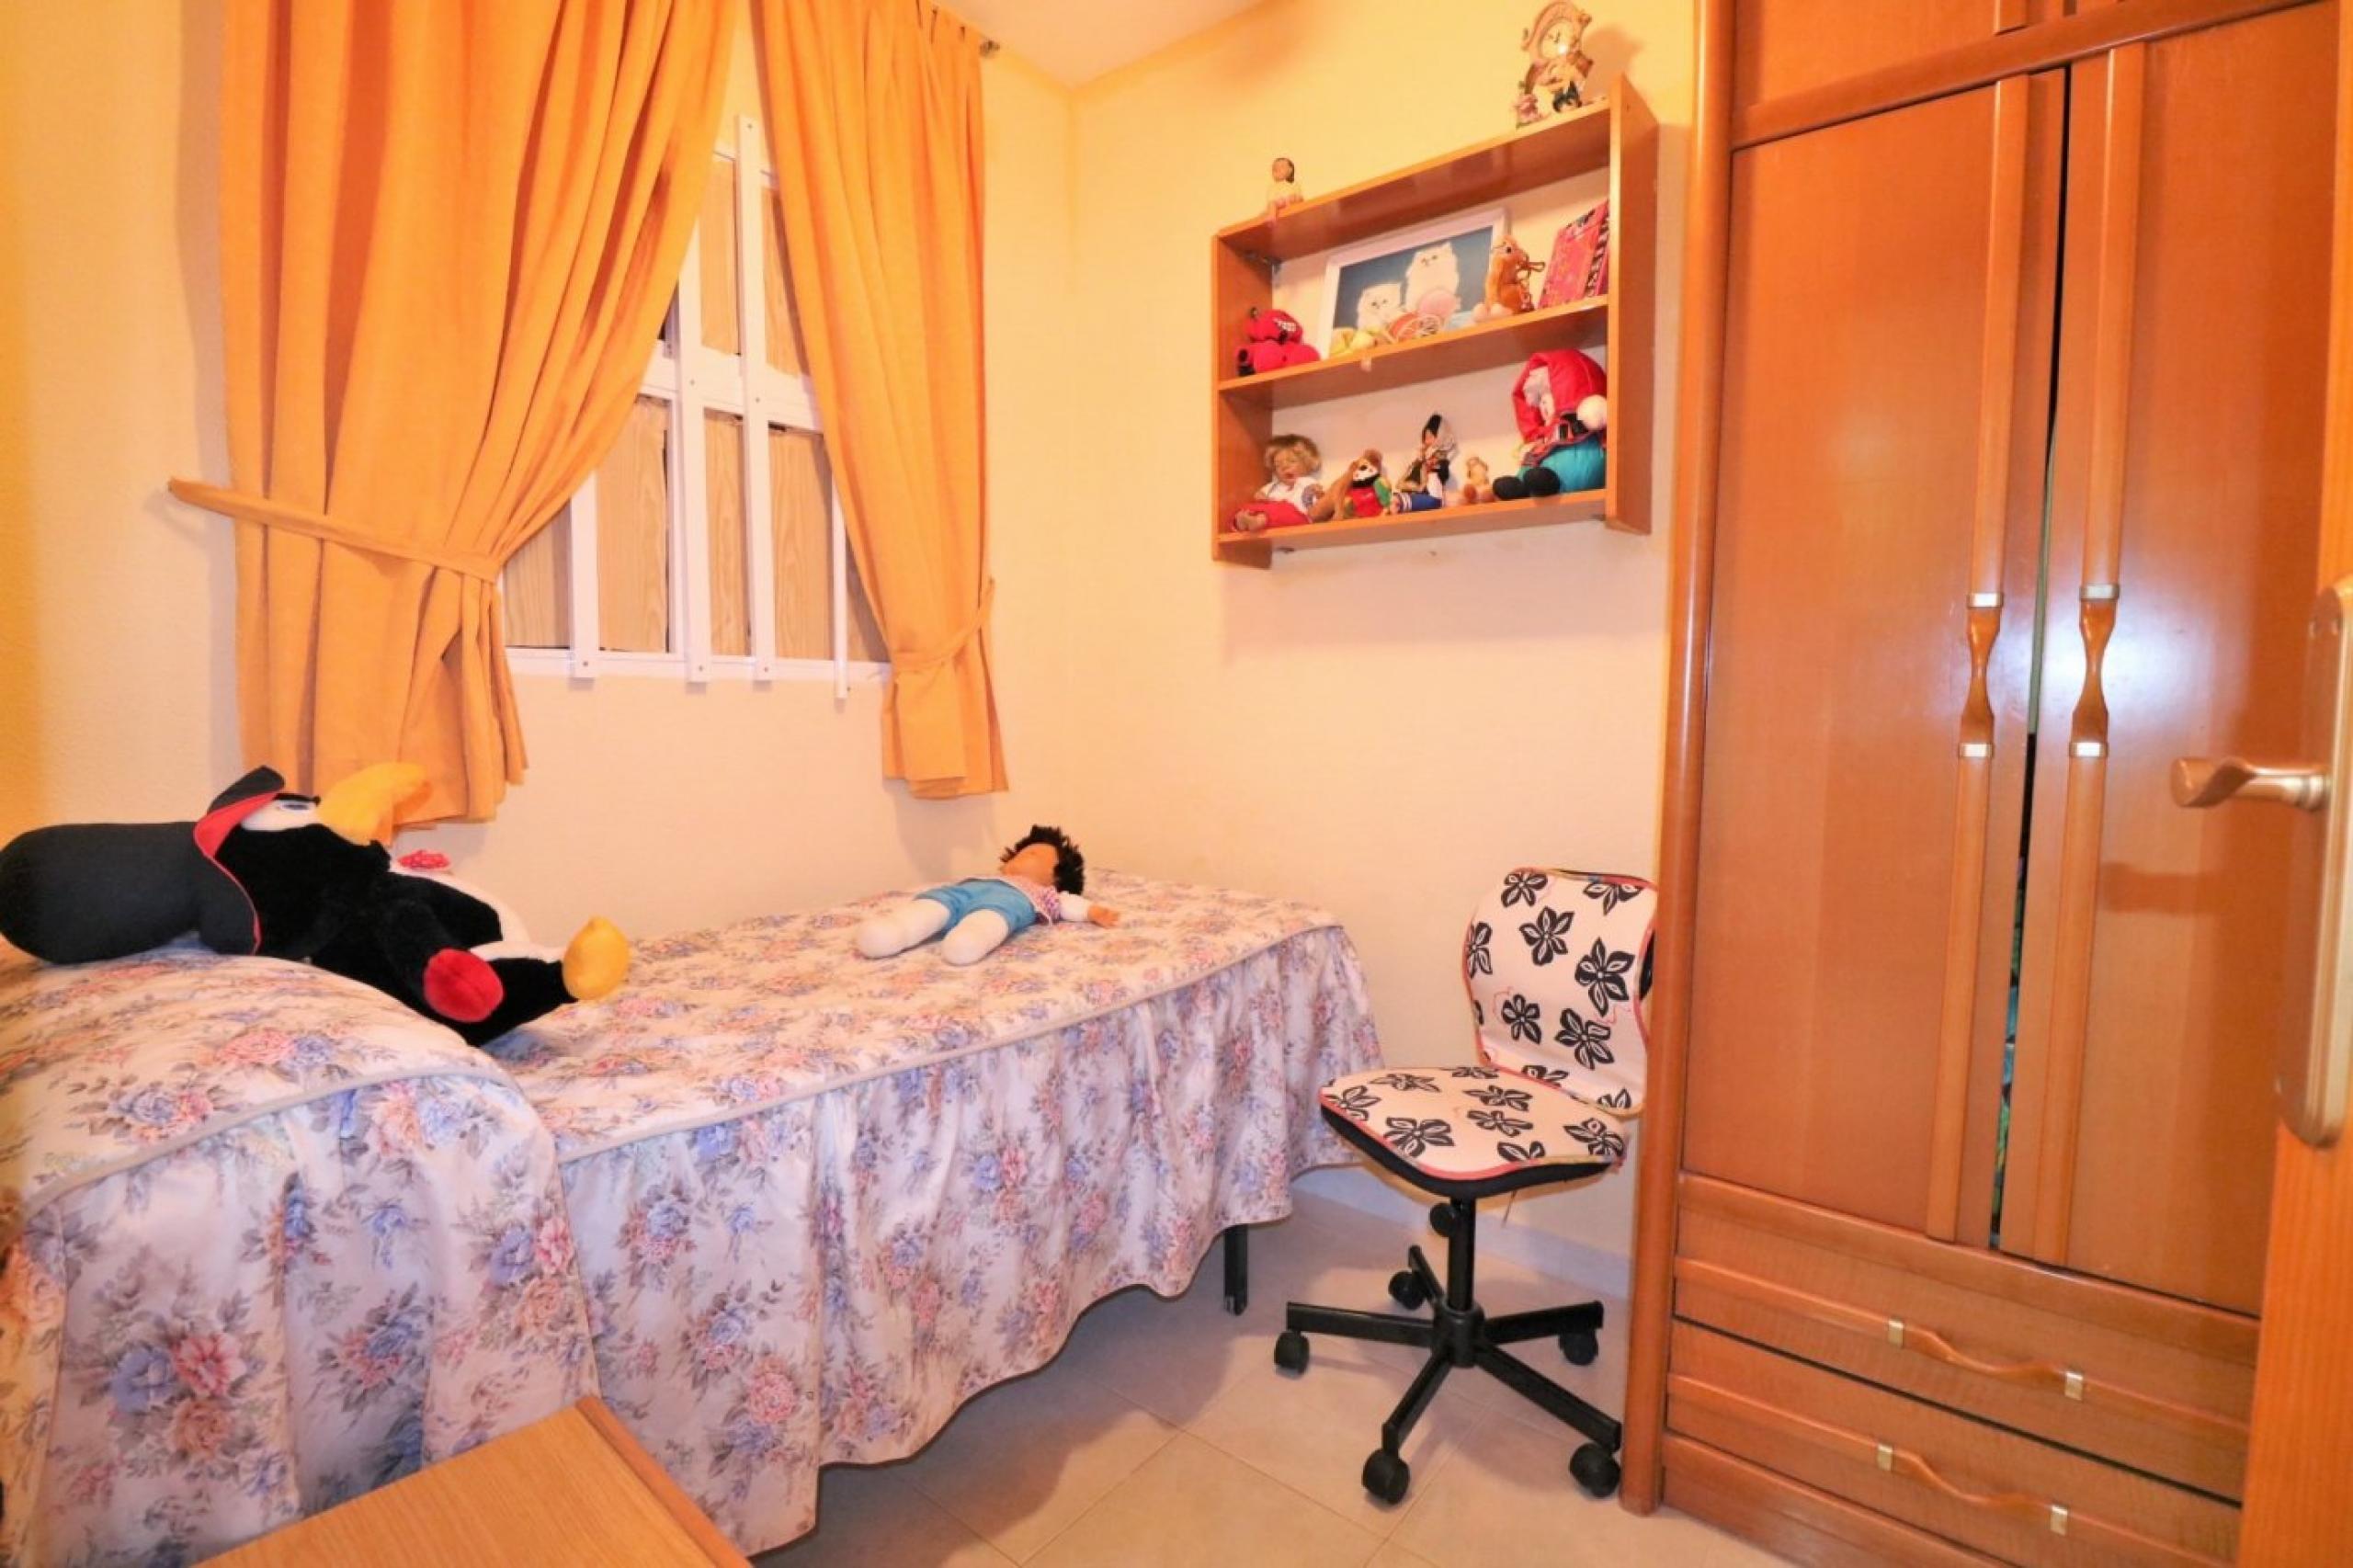 Appartement 3 chambres près de la plage des Nã-Ufragos